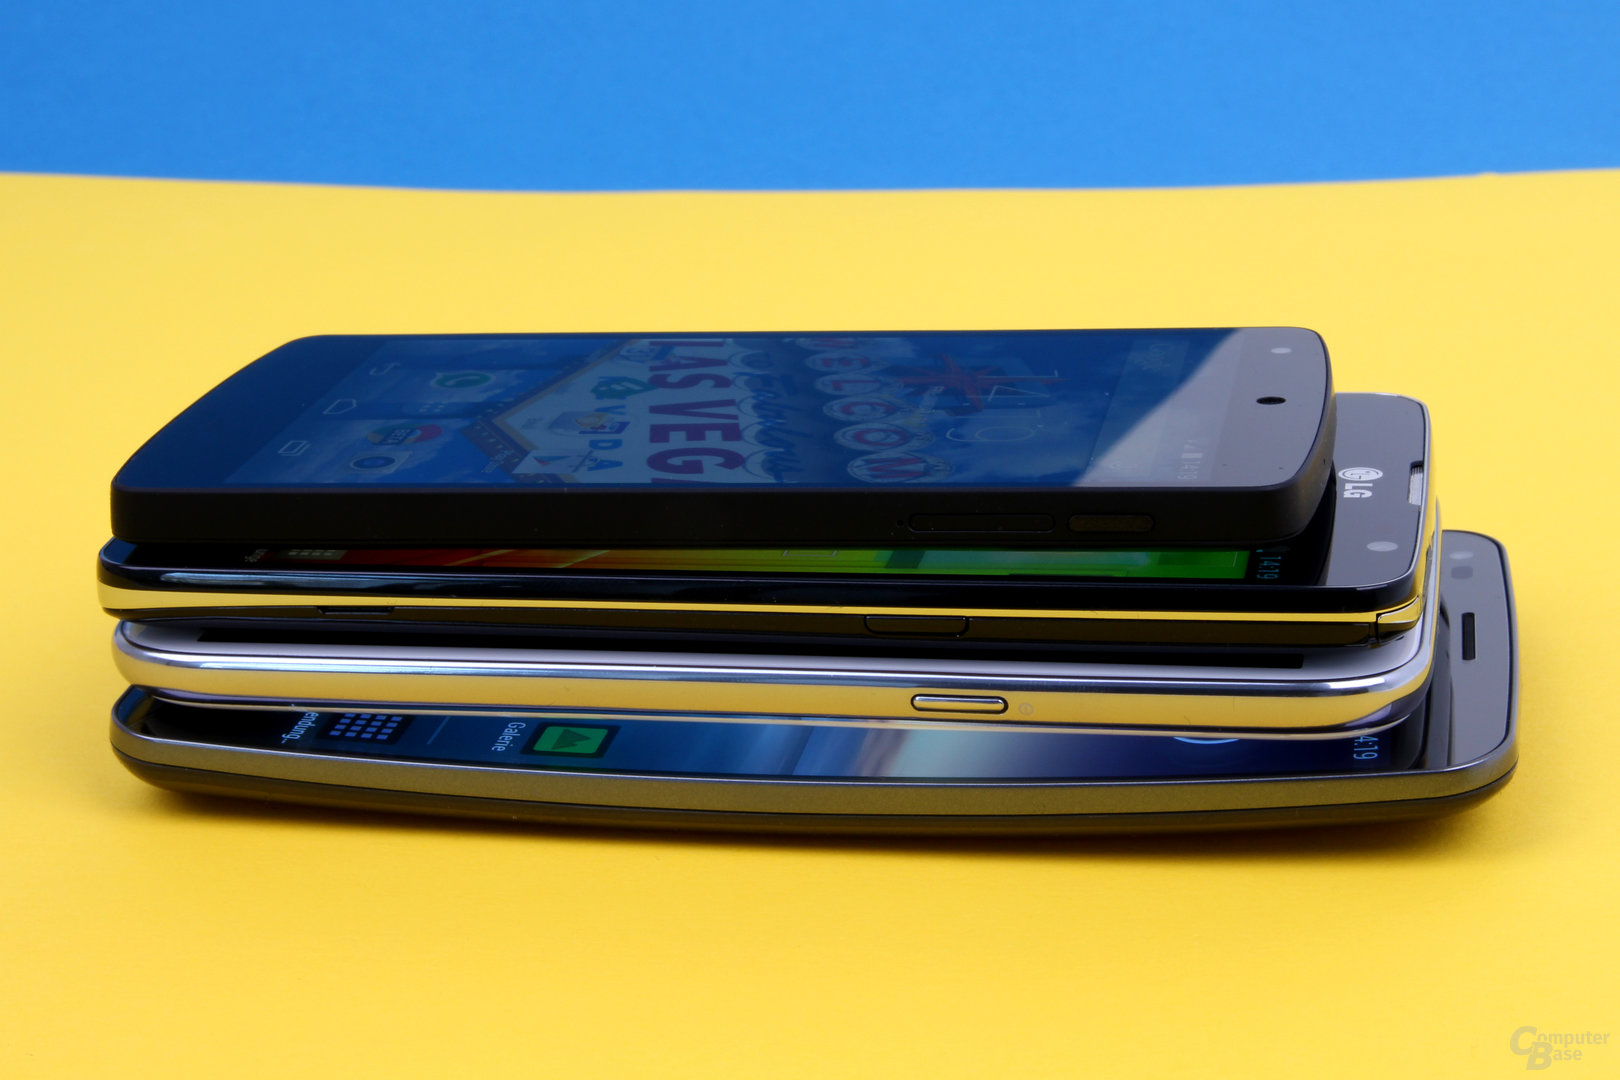 Größenvergleich: Google Nexus 5, LG G Pro Lite Dual, Samsung Galaxy Note II, LG G Flex